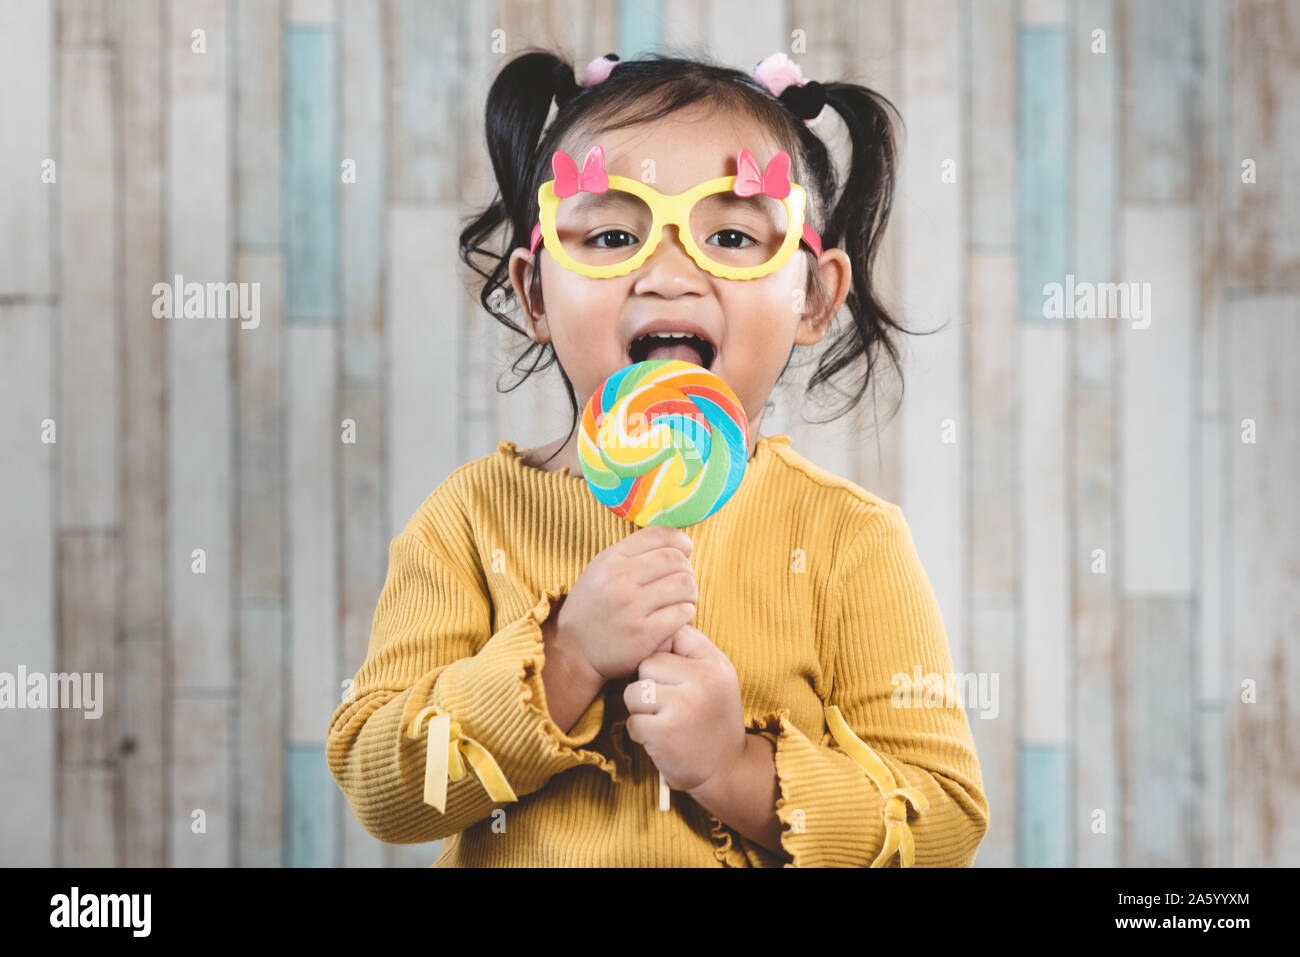 Süße kleine asiatische Mädchen halten und essen eine bunte Lollipop. Konzept der Mundpflege und Süßigkeiten Tag Stockfoto